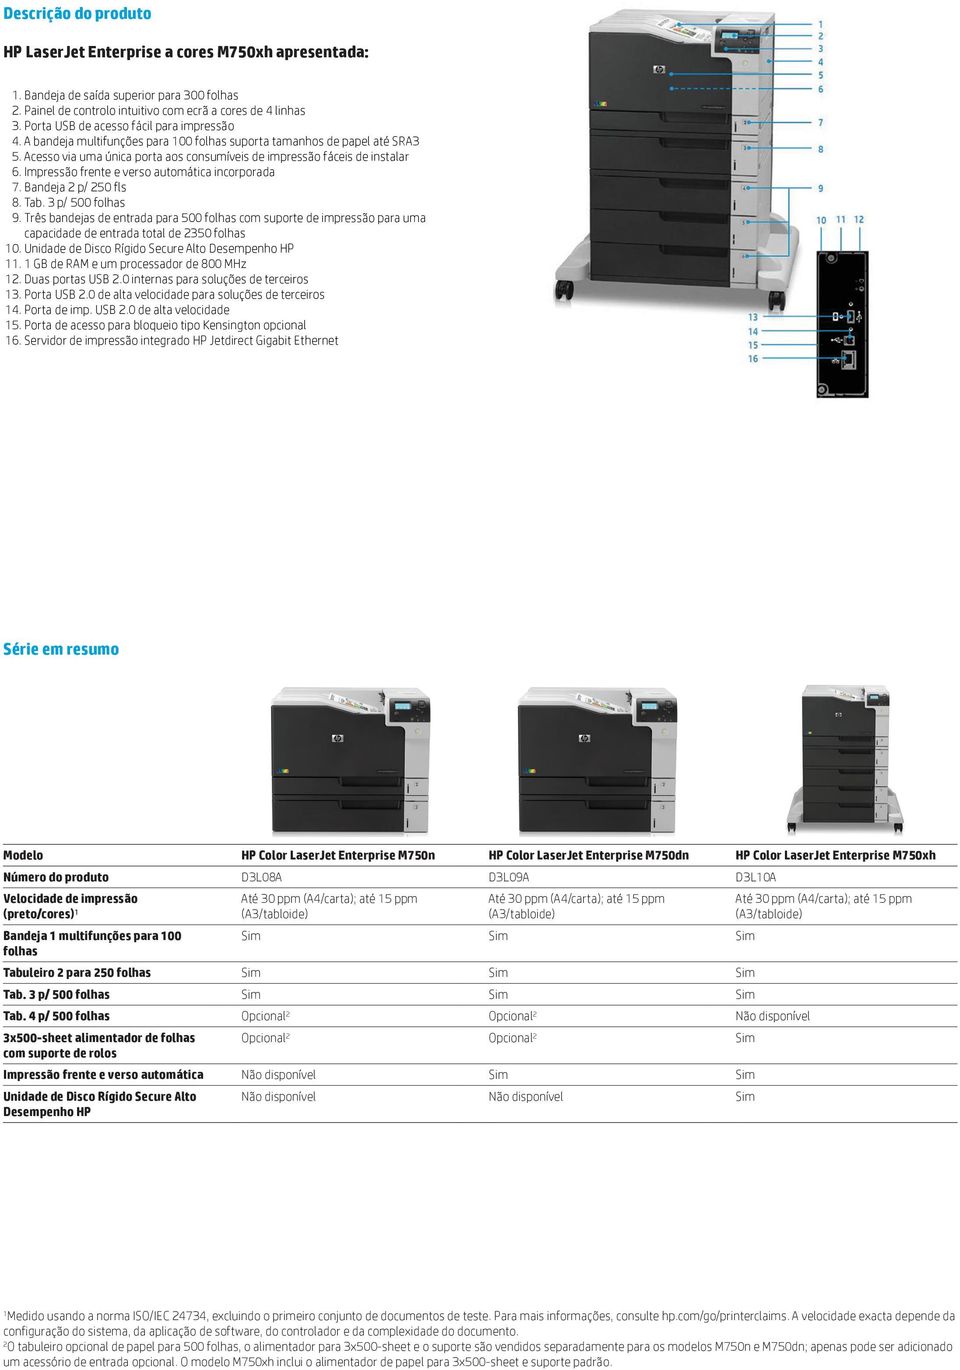 Impressão frente e verso automática incorporada 7. Bandeja 2 p/ 250 fls 8. Tab. 3 p/ 500 folhas 9.